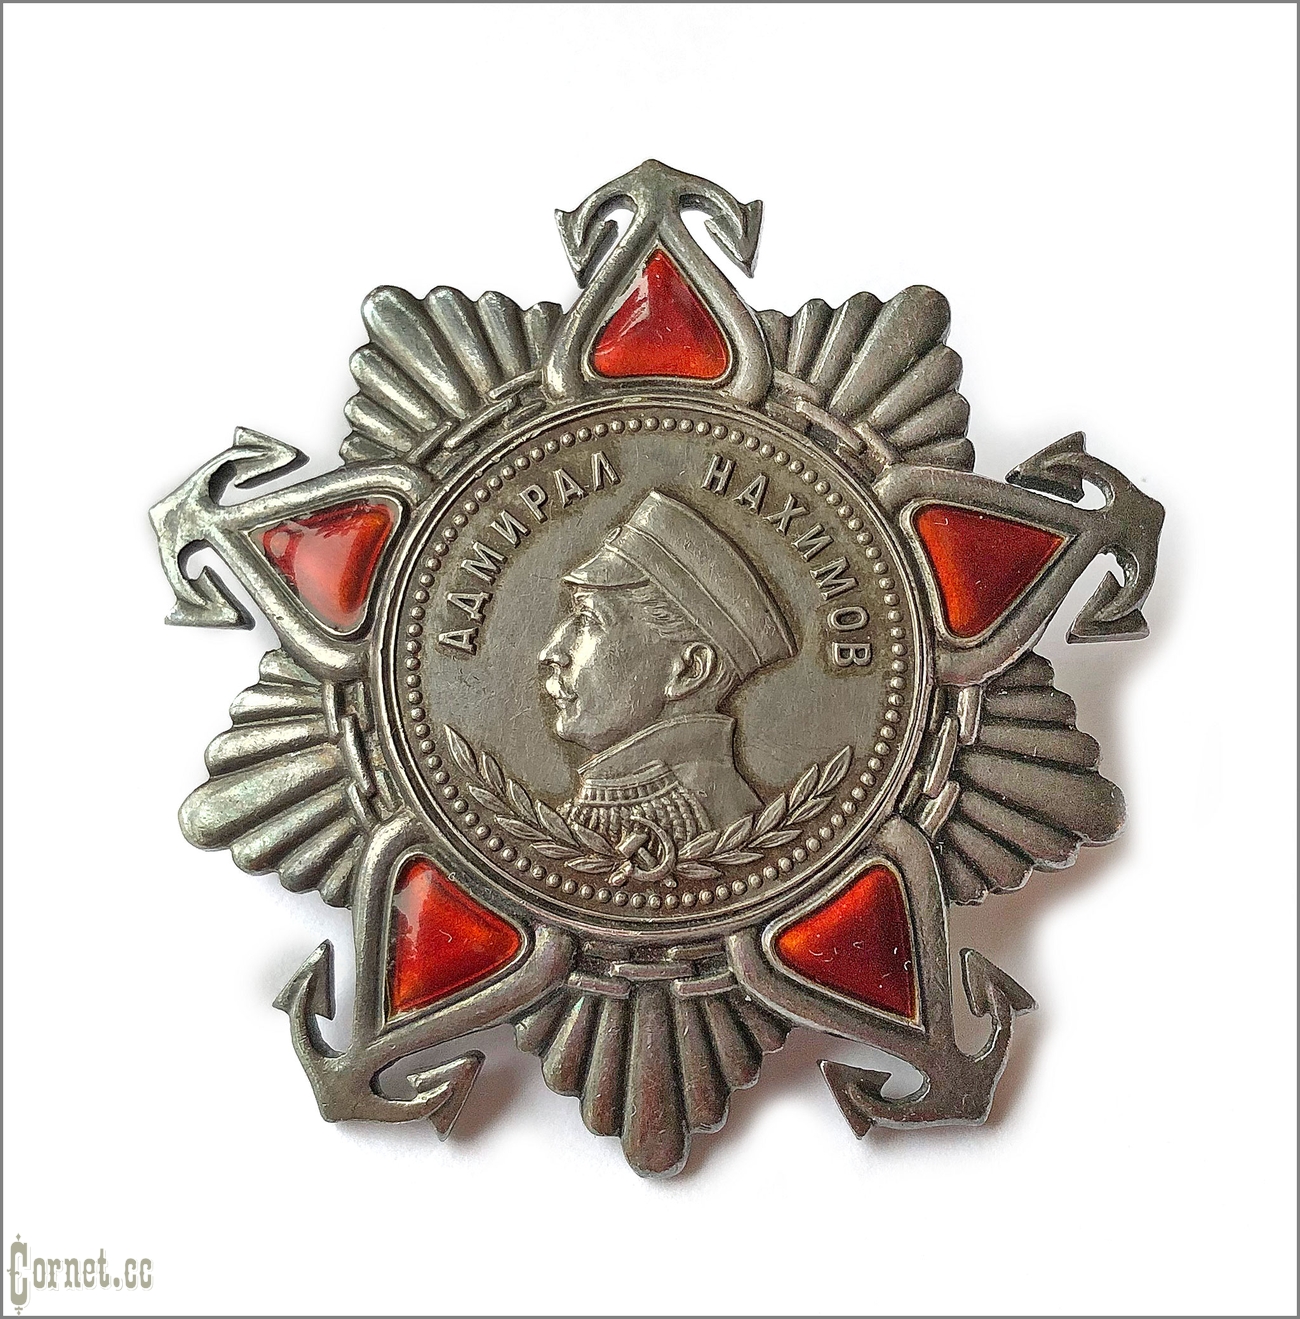 Орден Нахимова II степени